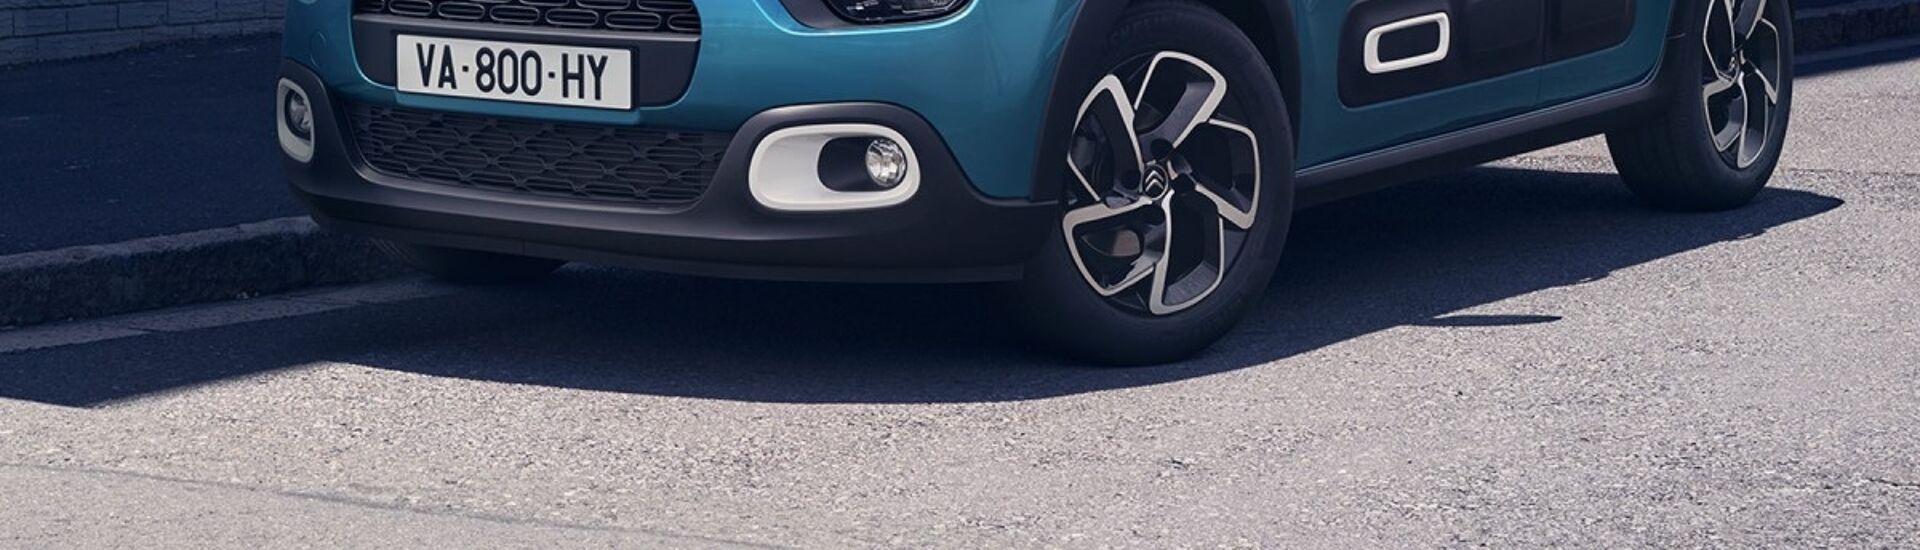 Les tarifs de la nouvelle Citroën C3 dévoilés